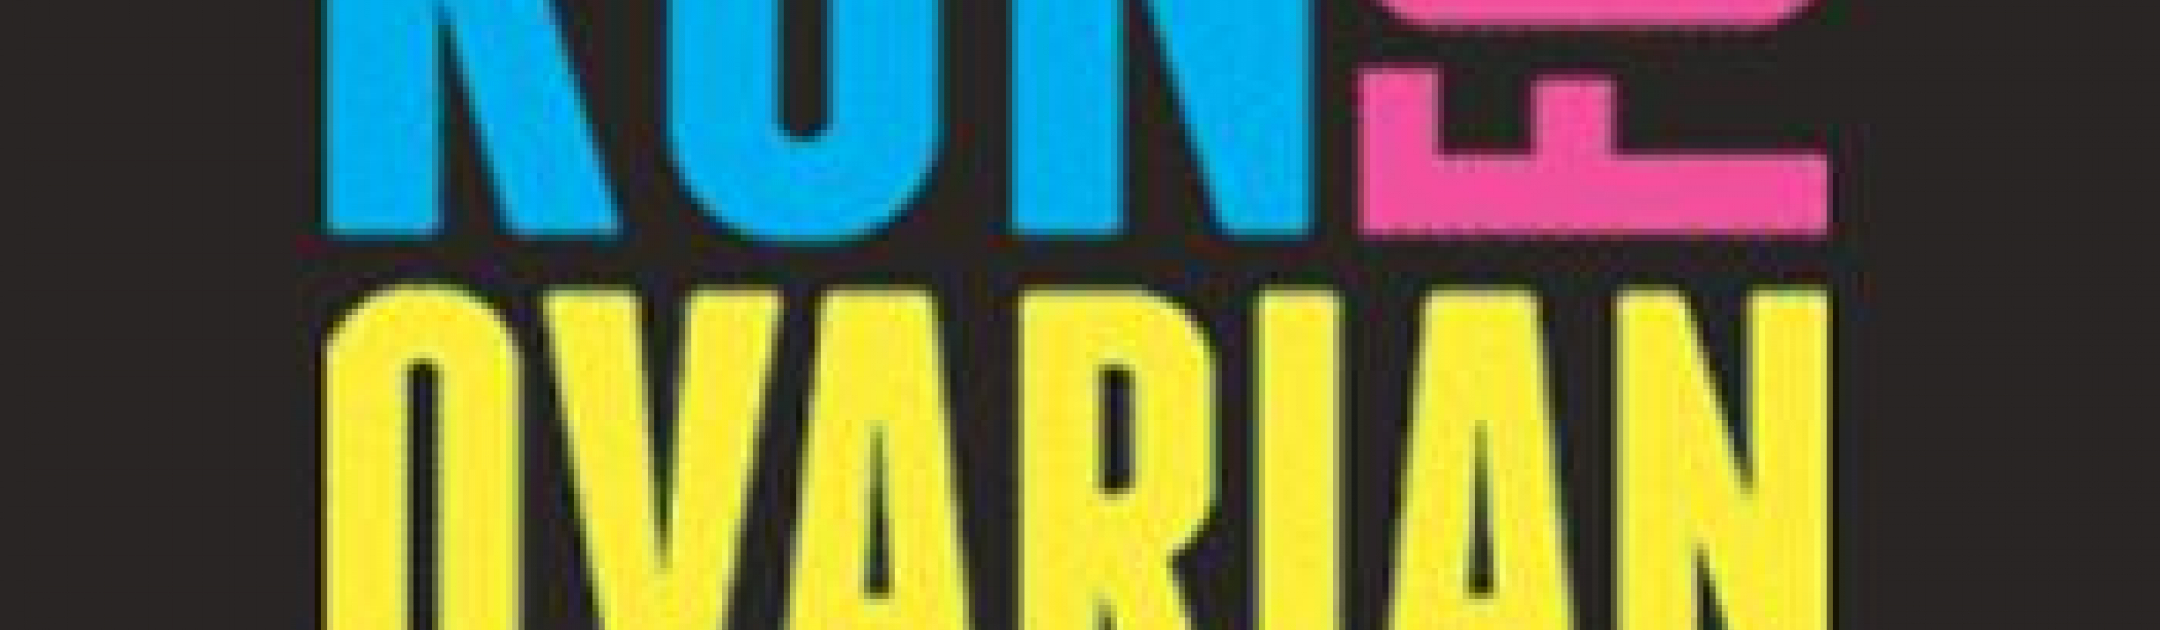 London run for ovarian cancer logo